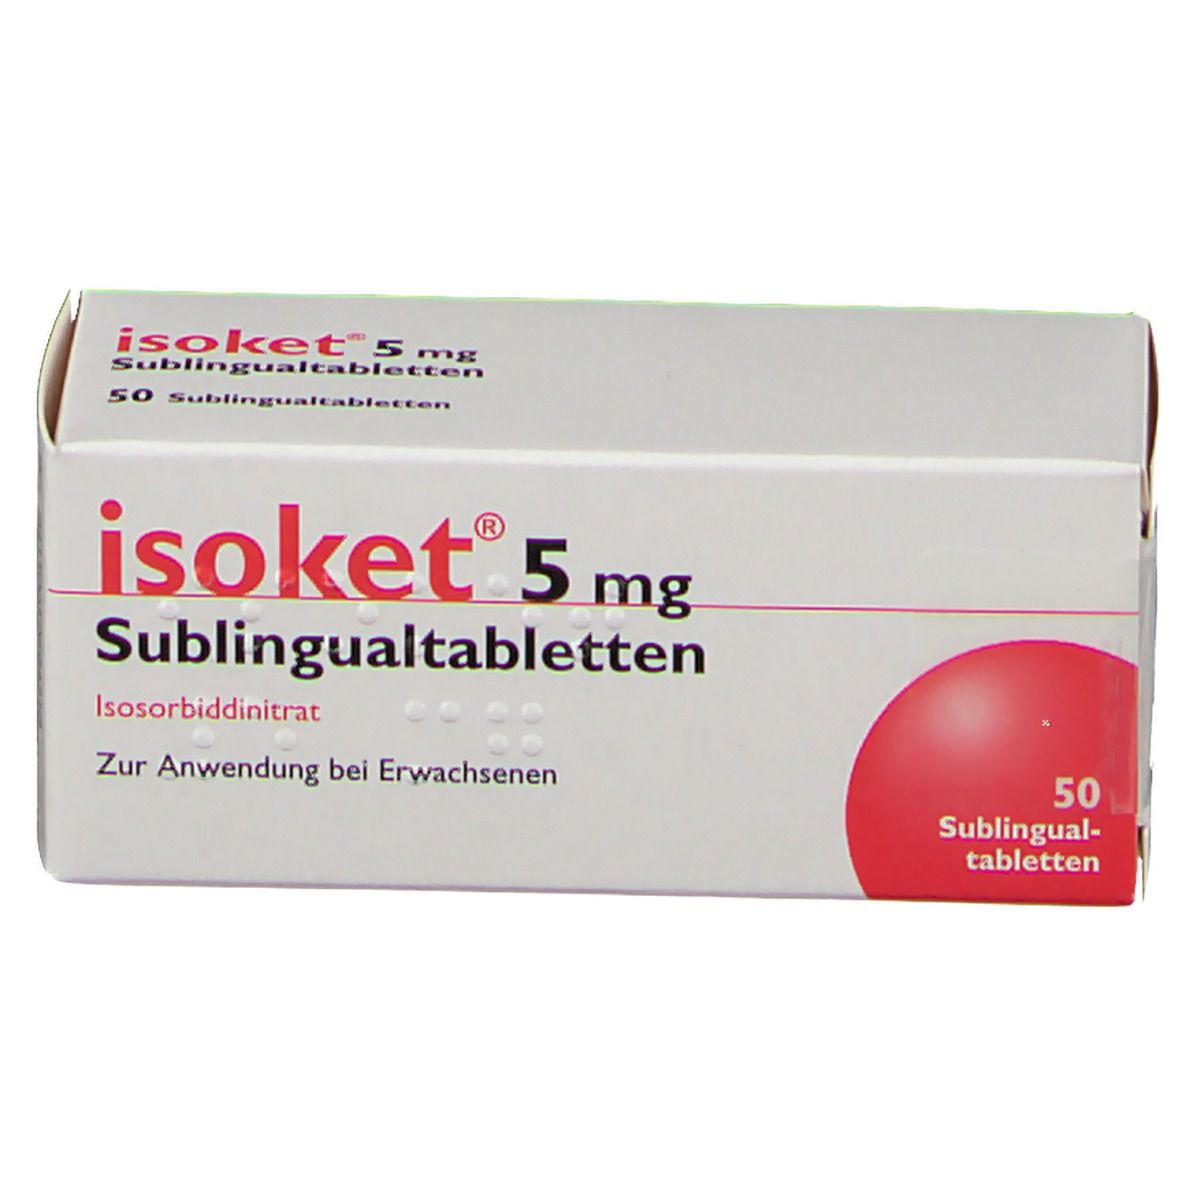 isoket® 5 mg